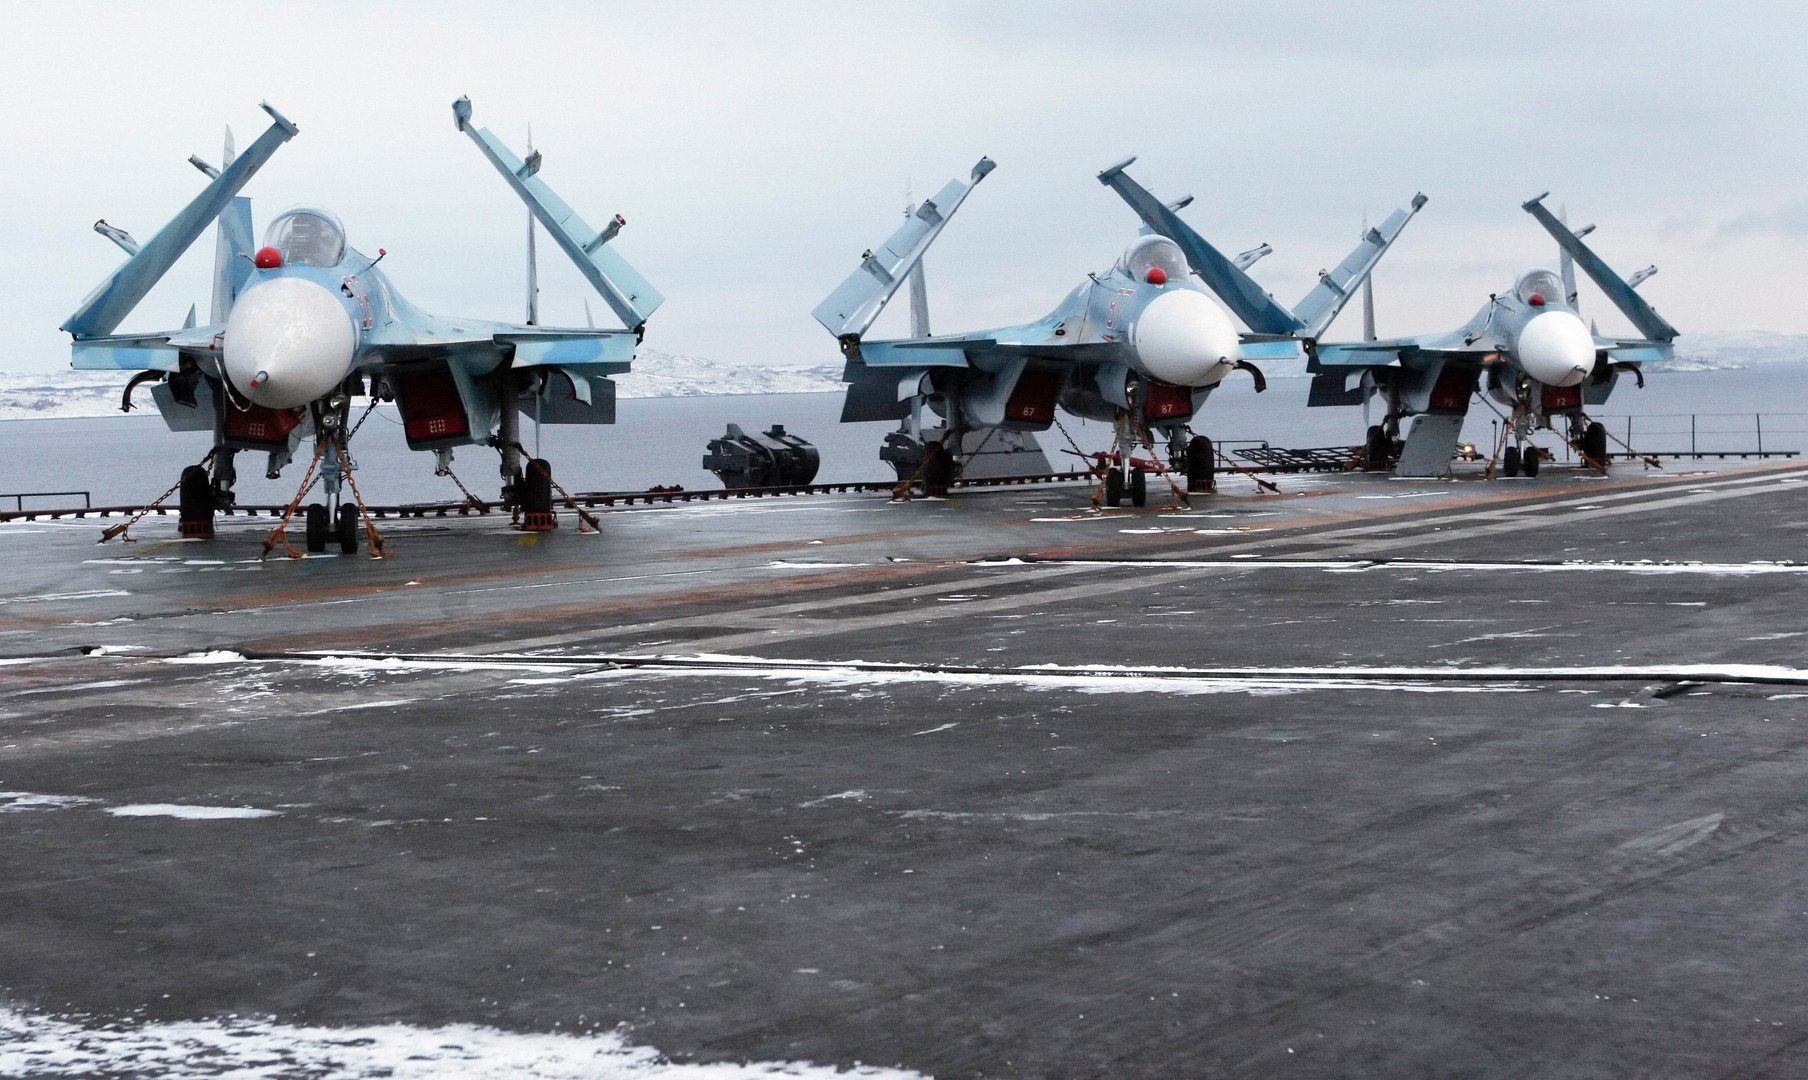 القوات البحرية الروسية ستضرب الإرهابيين في سوريا بمنتهى الدقة